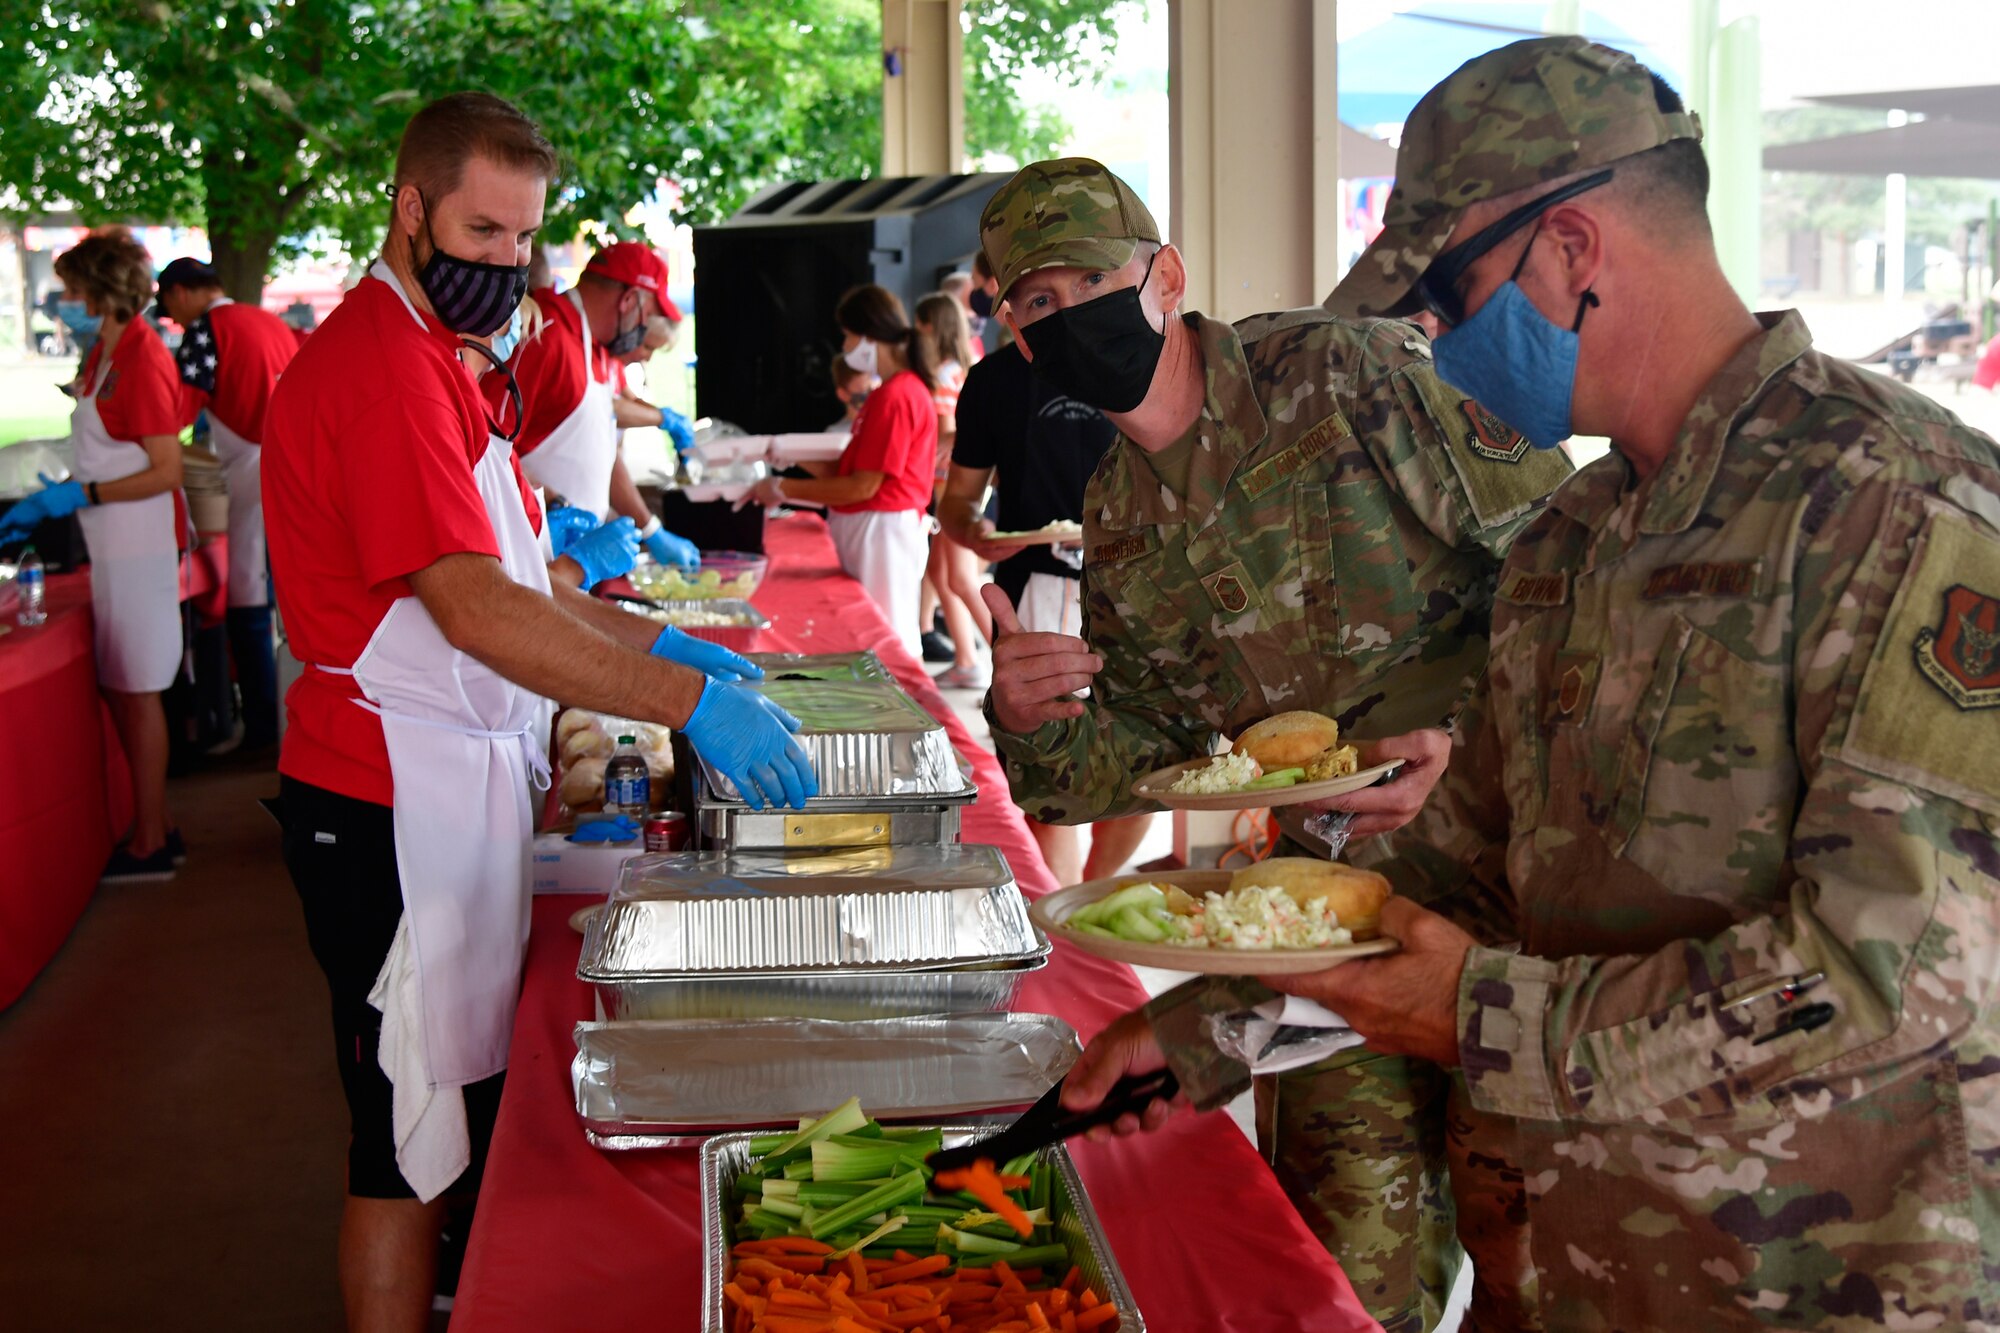 Volunteers serving food to Airmen in a food line.